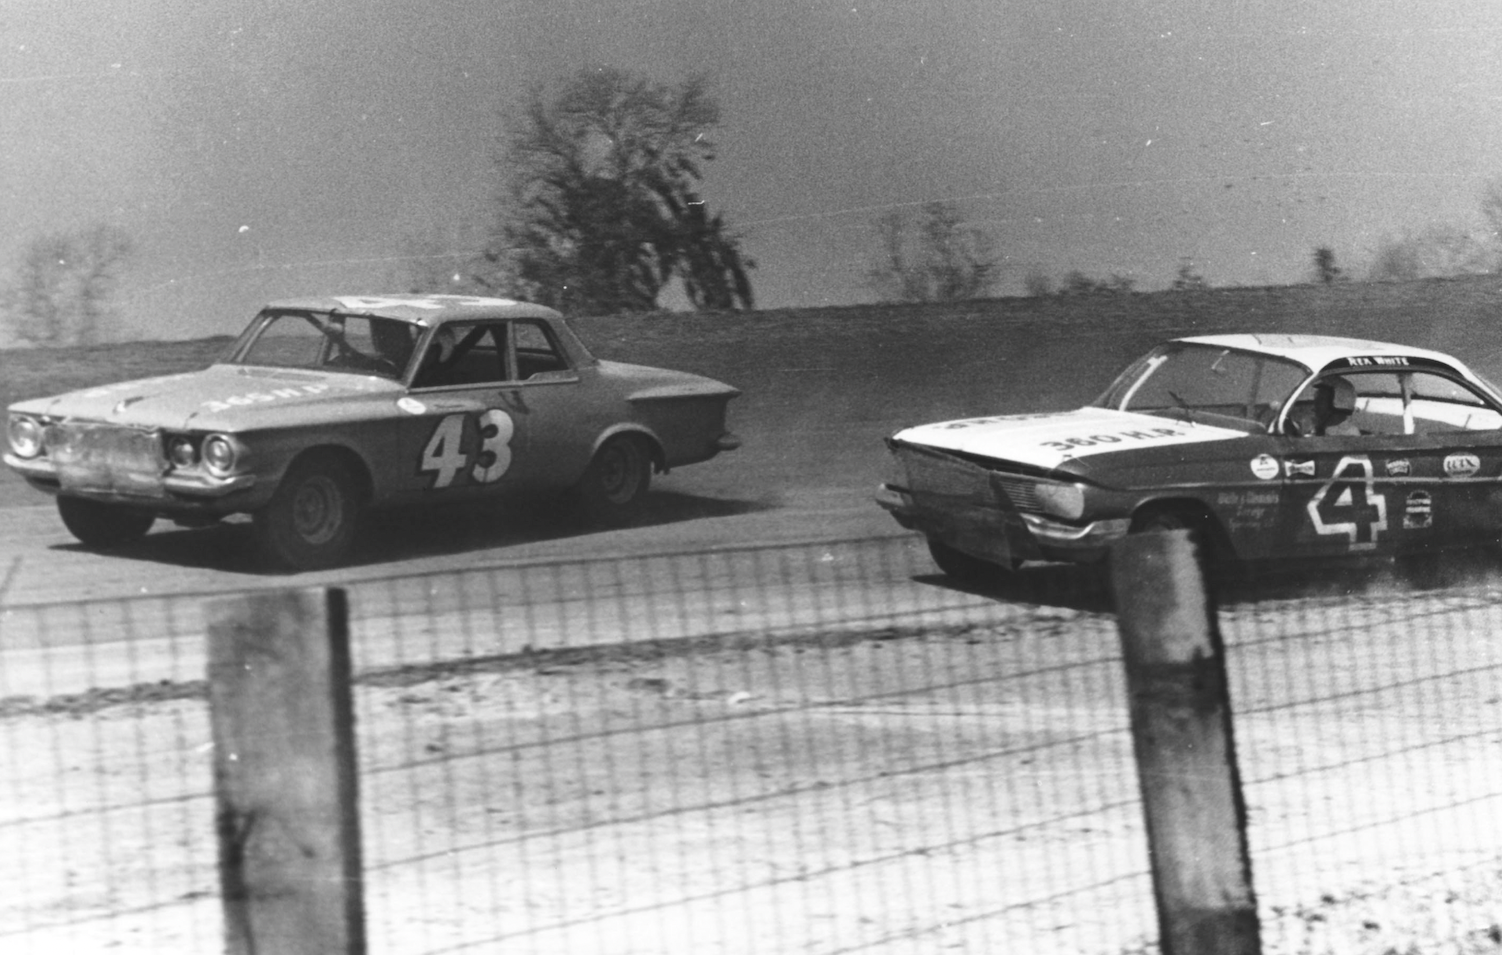 1960 dirt track racing - 43